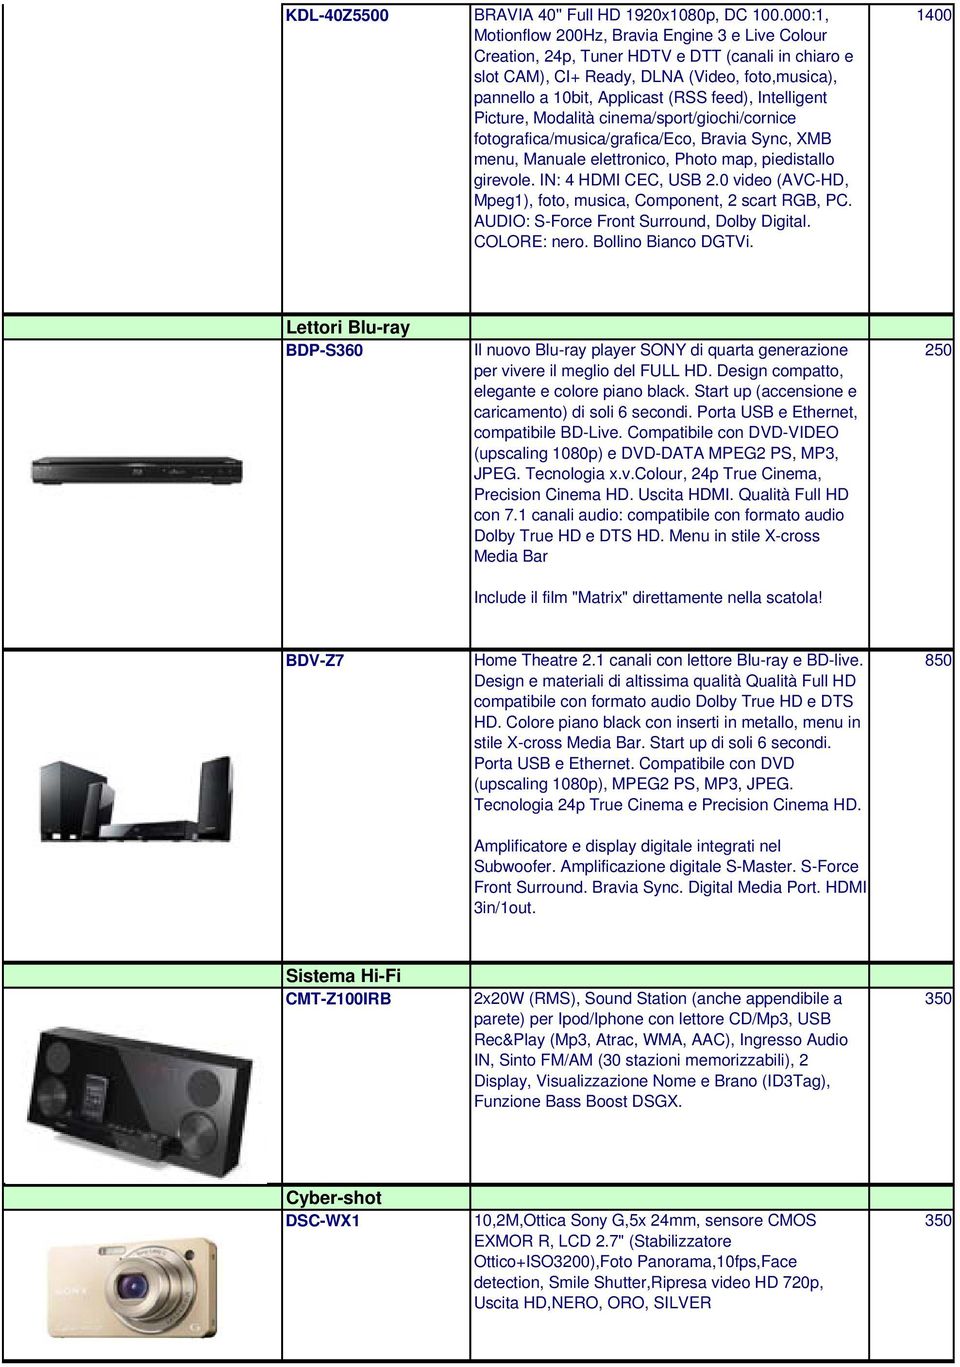 Intelligent Picture, Modalità cinema/sport/giochi/cornice fotografica/musica/grafica/eco, Bravia Sync, XMB menu, Manuale elettronico, Photo map, piedistallo girevole. IN: 4 HDMI CEC, USB 2.